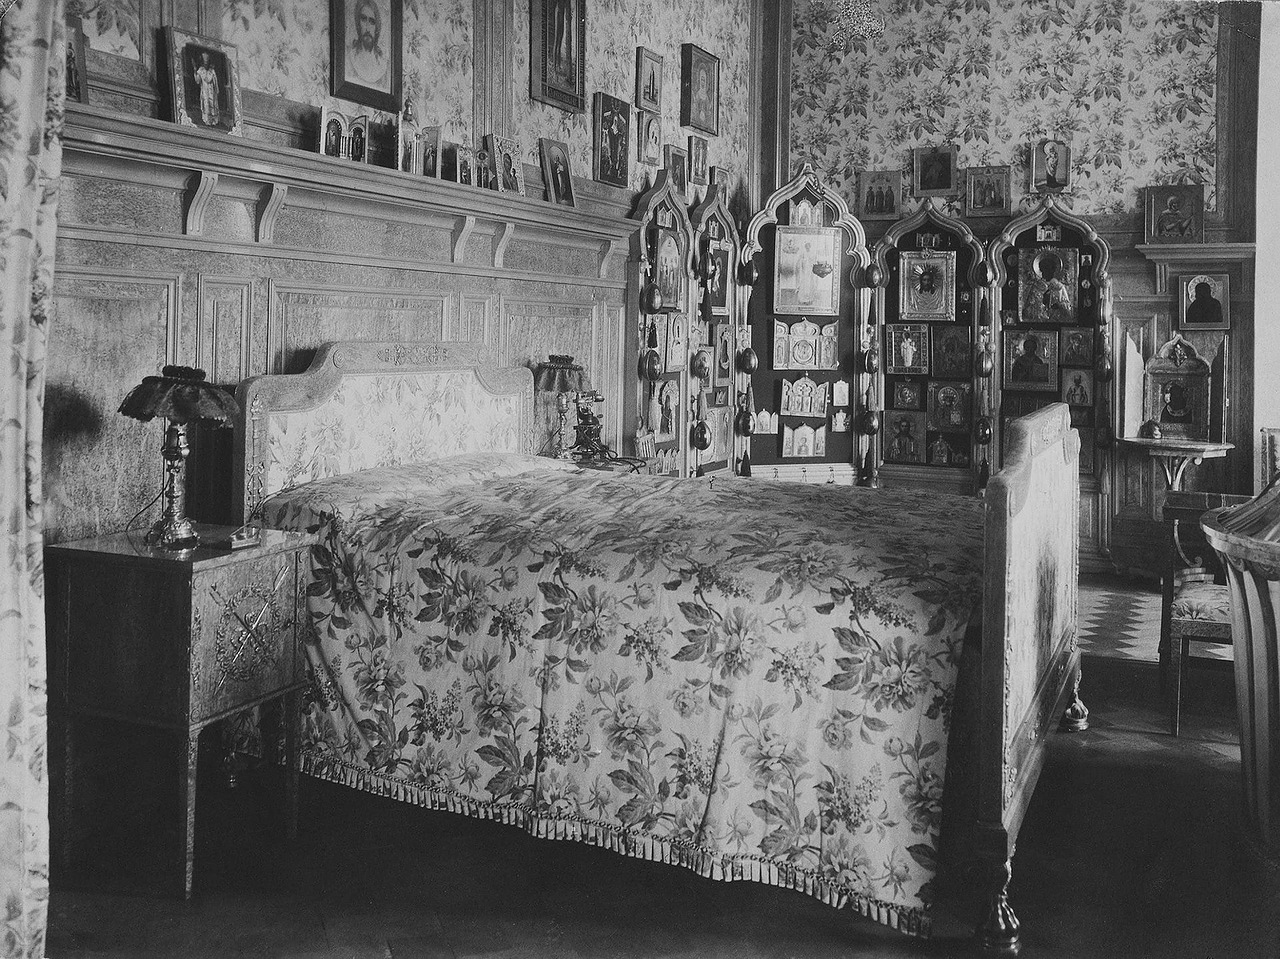 En 1904, Nicolas II transféra la résidence permanente au palais Alexandre à Tsarskoïe Selo, domaine de la famille royale situé près de la ville de Pouchkine, à 25 km de Saint-Pétersbourg. Sur l'image : Chambre à coucher de l’empereur Nicolas II.